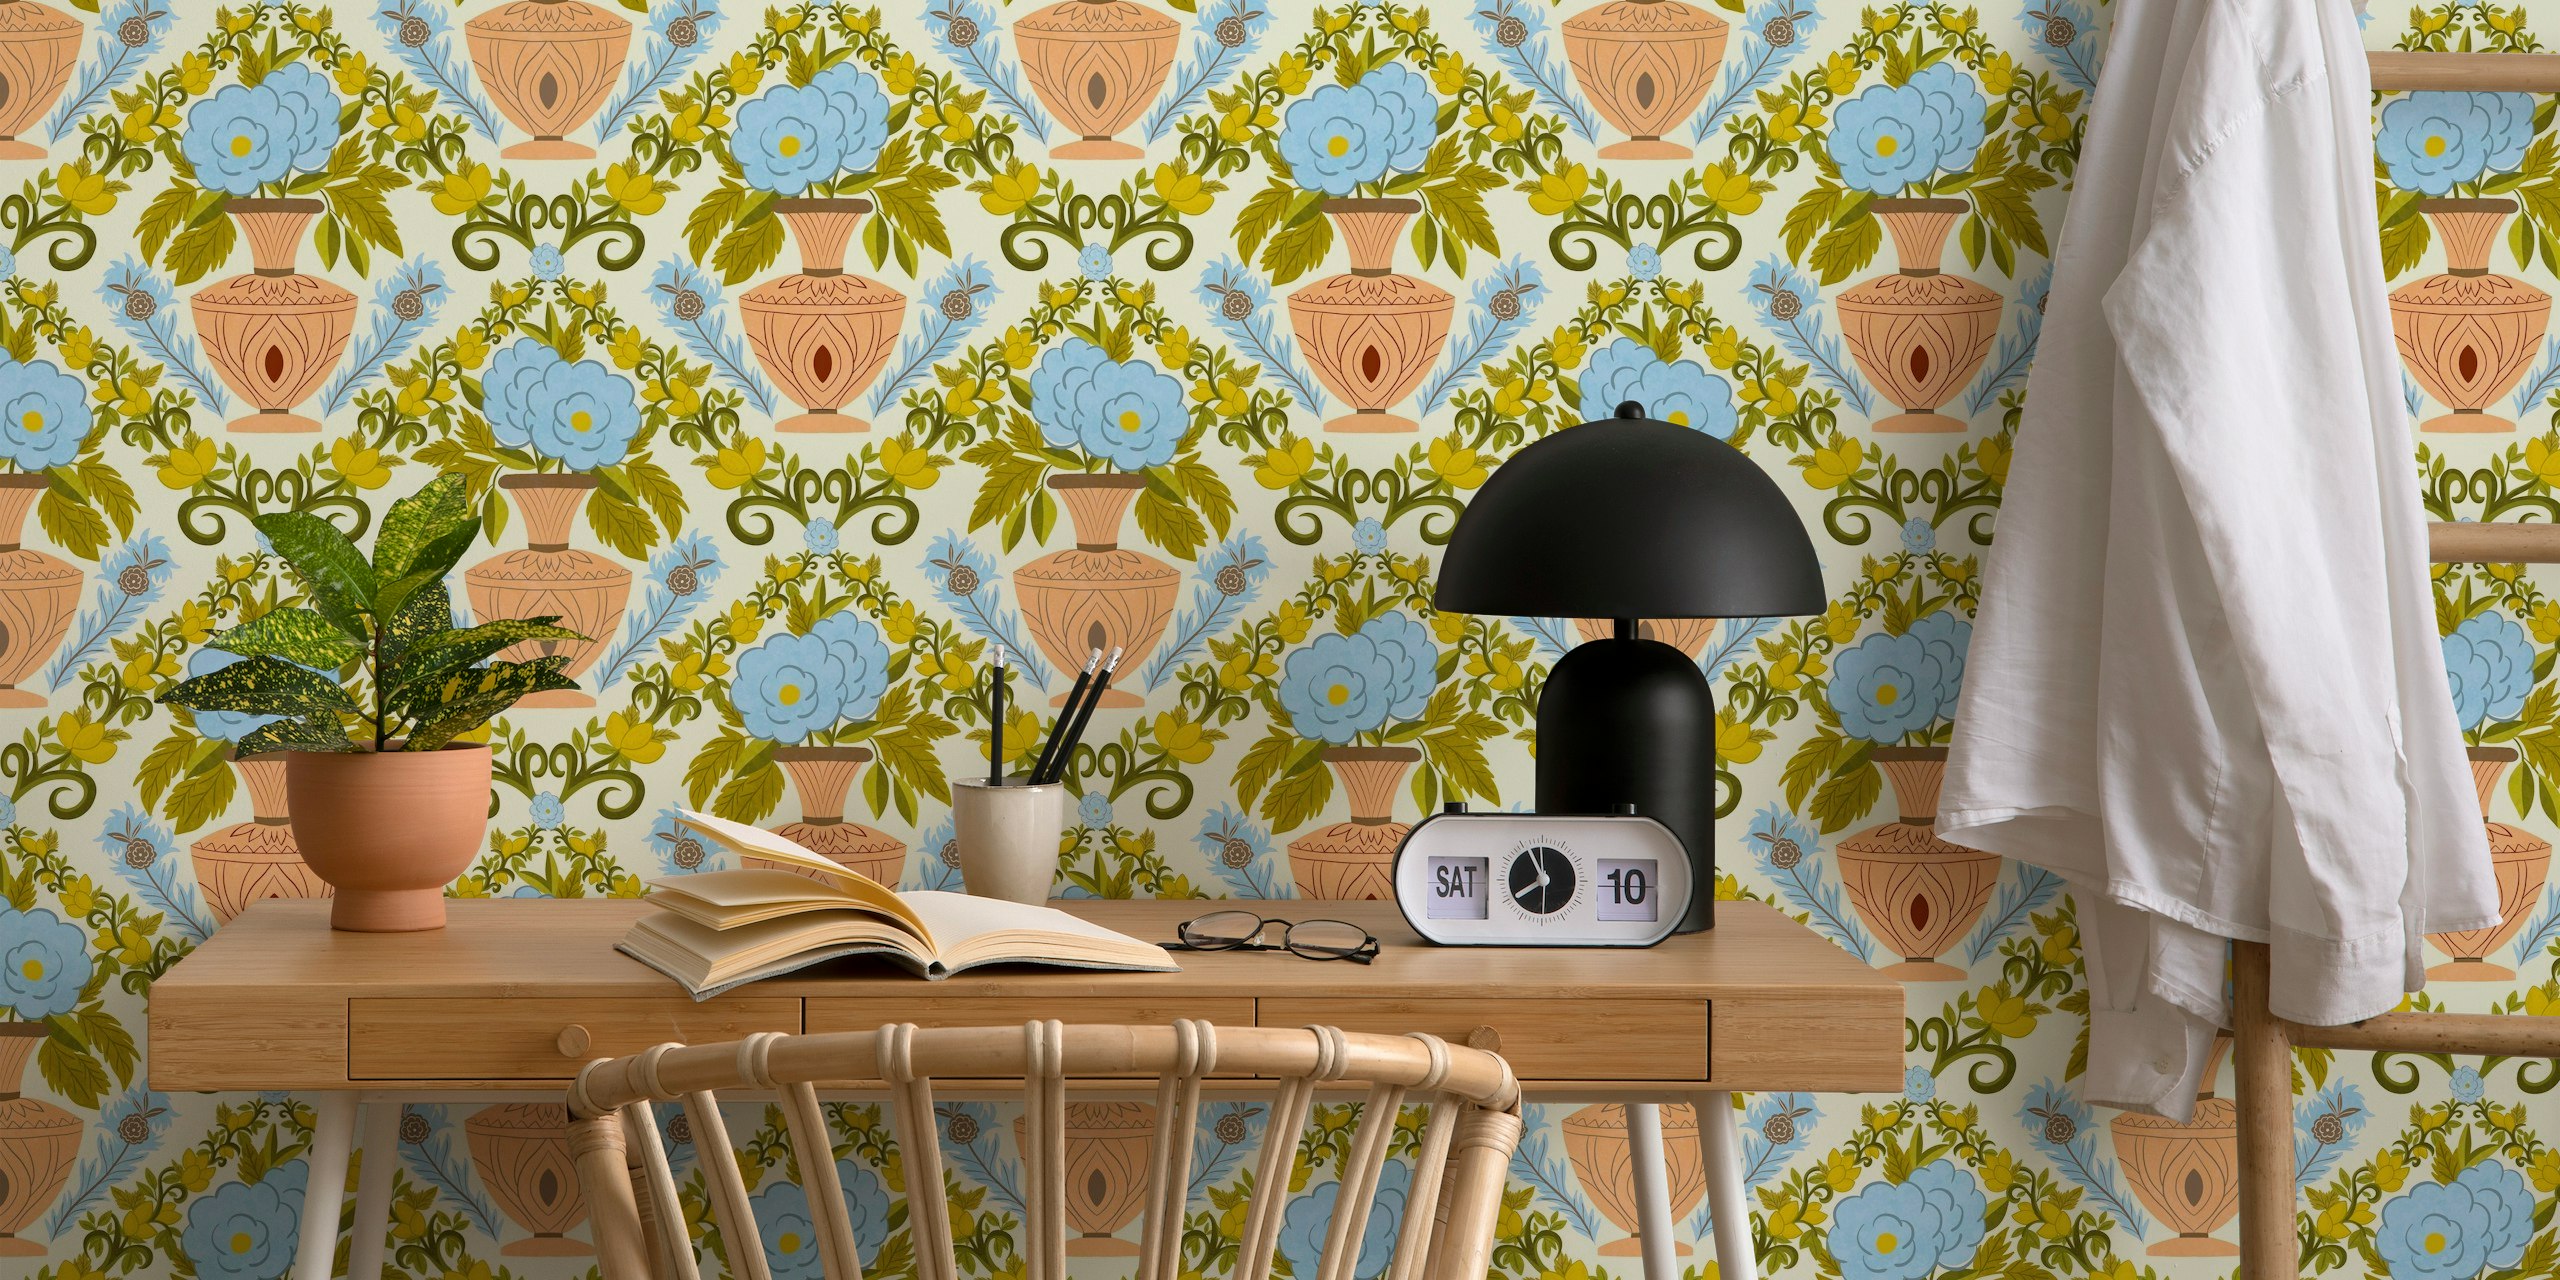 Italian Villa Wallpaper with citrus fruits wallpaper